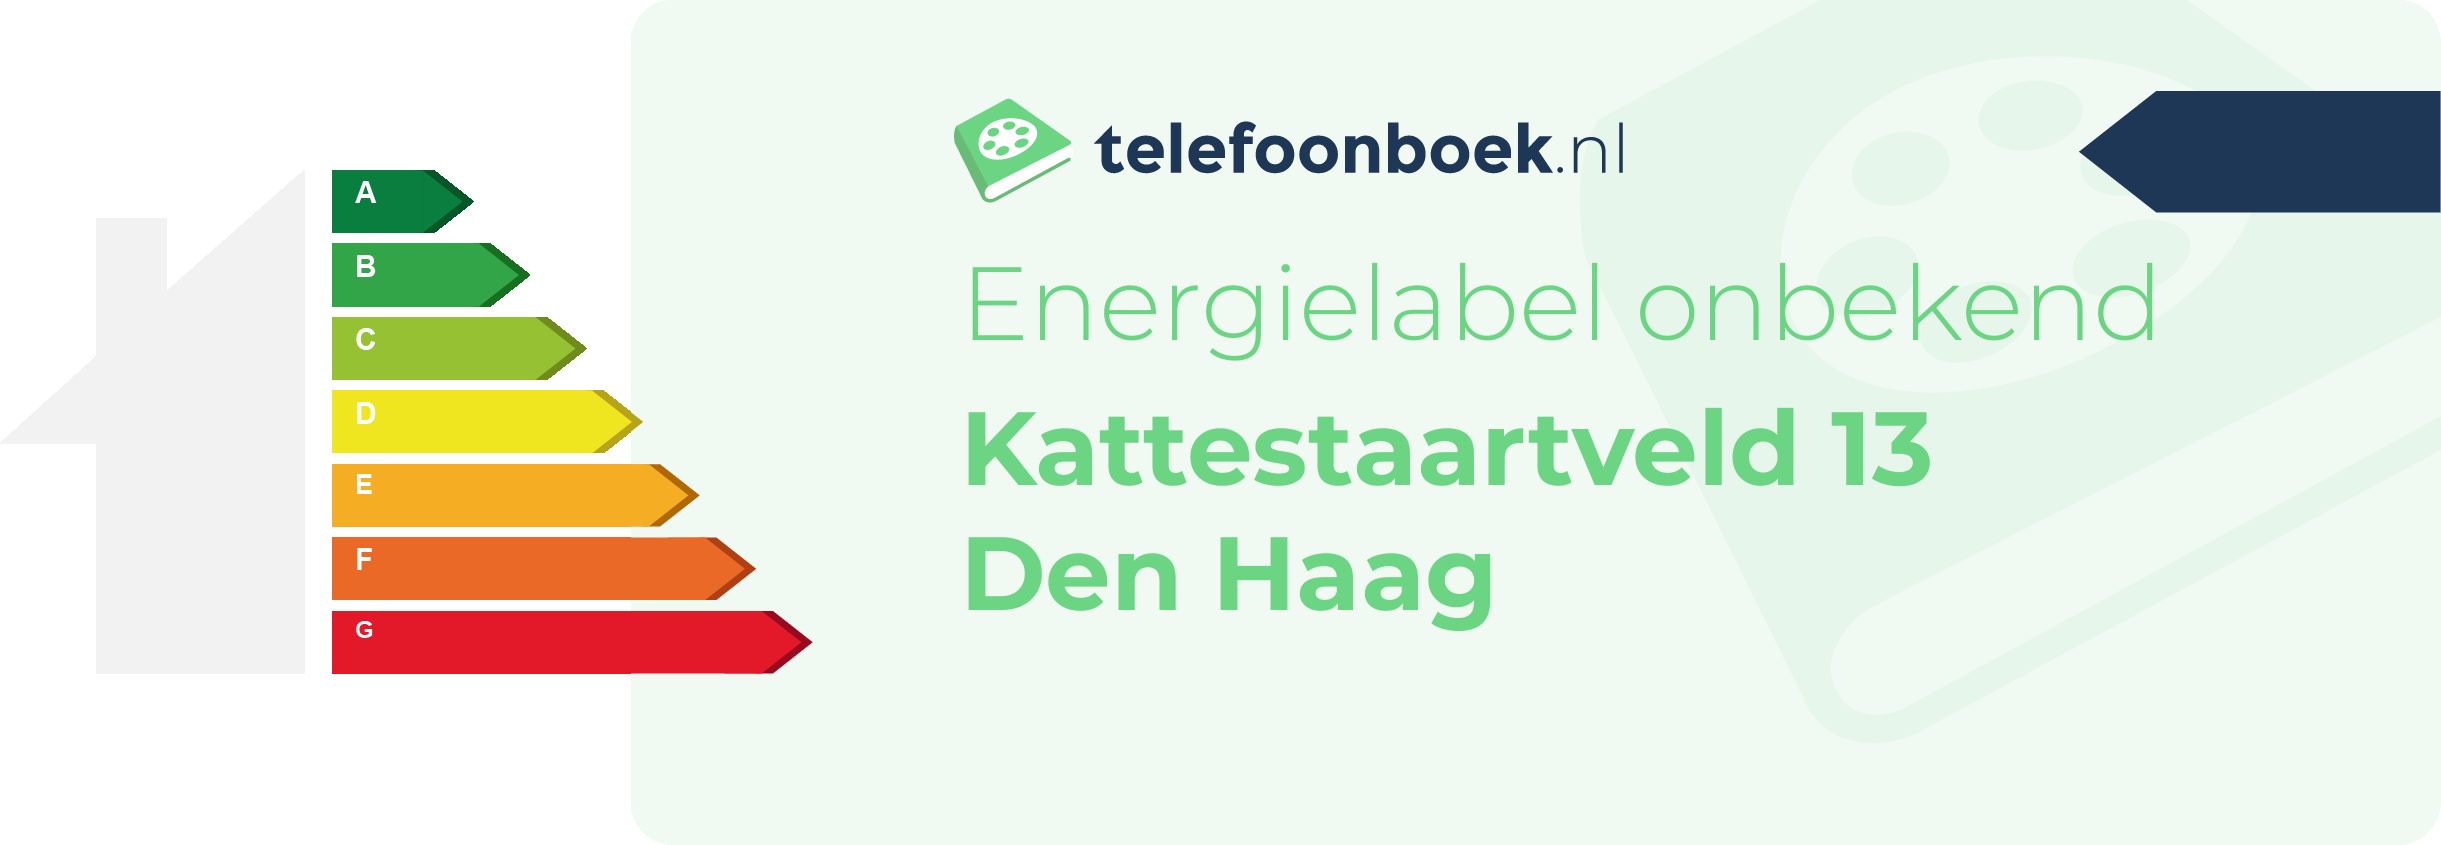 Energielabel Kattestaartveld 13 Den Haag